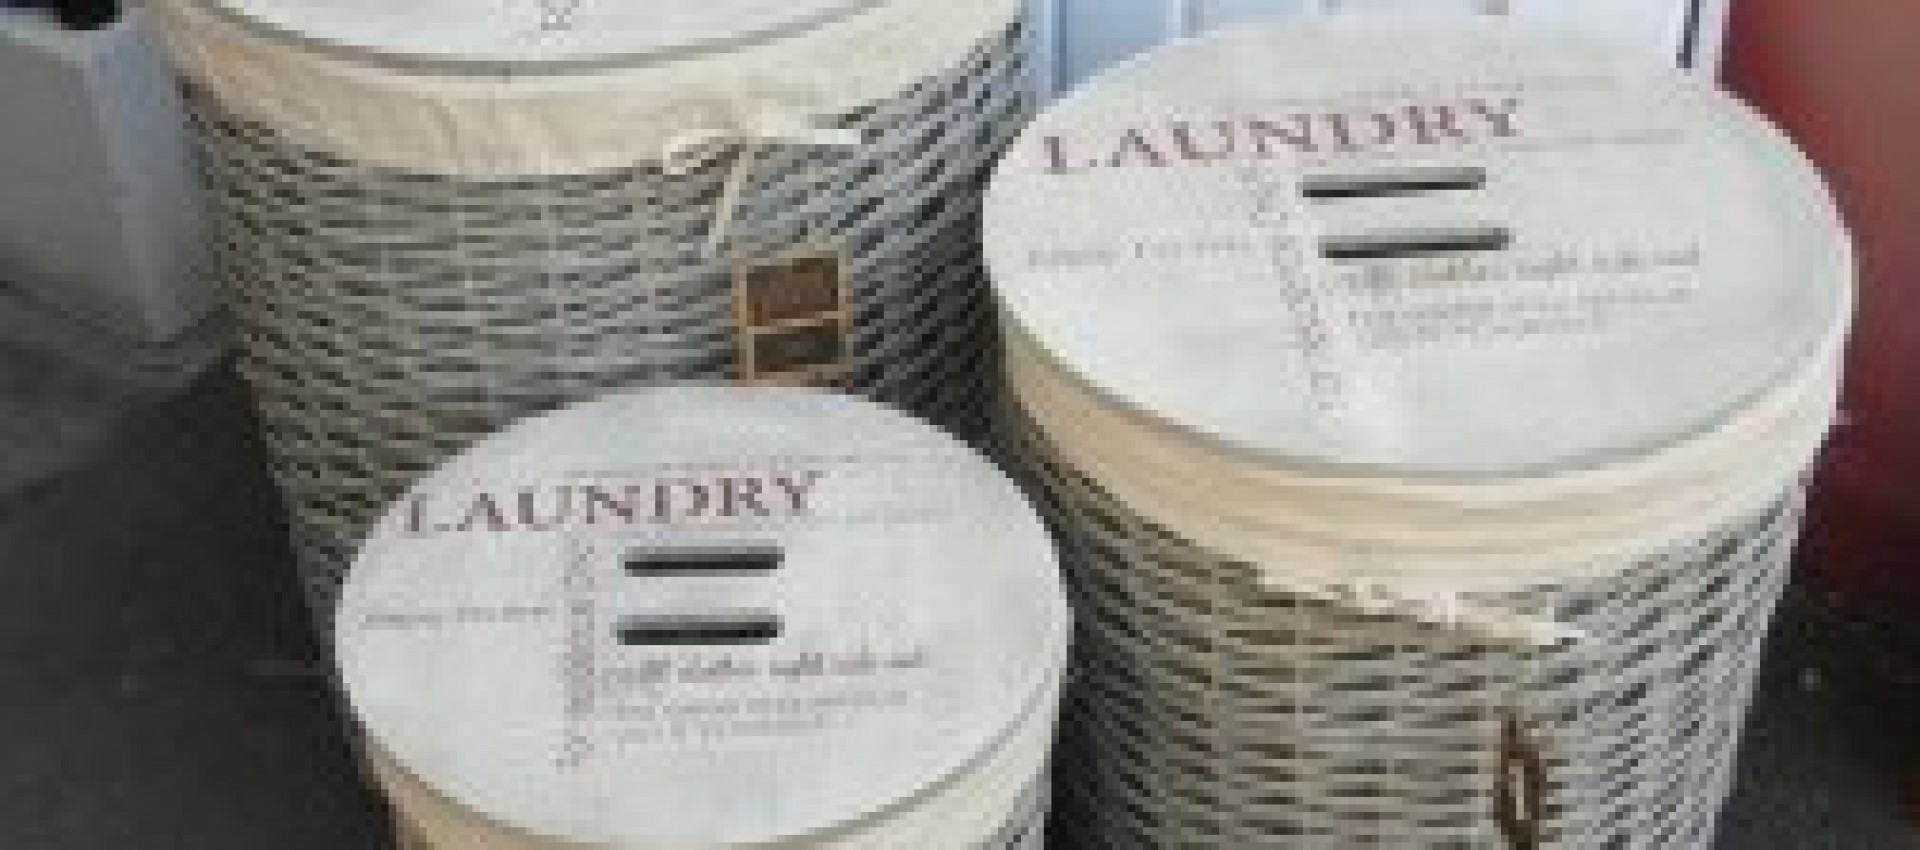 Laundry-Basket